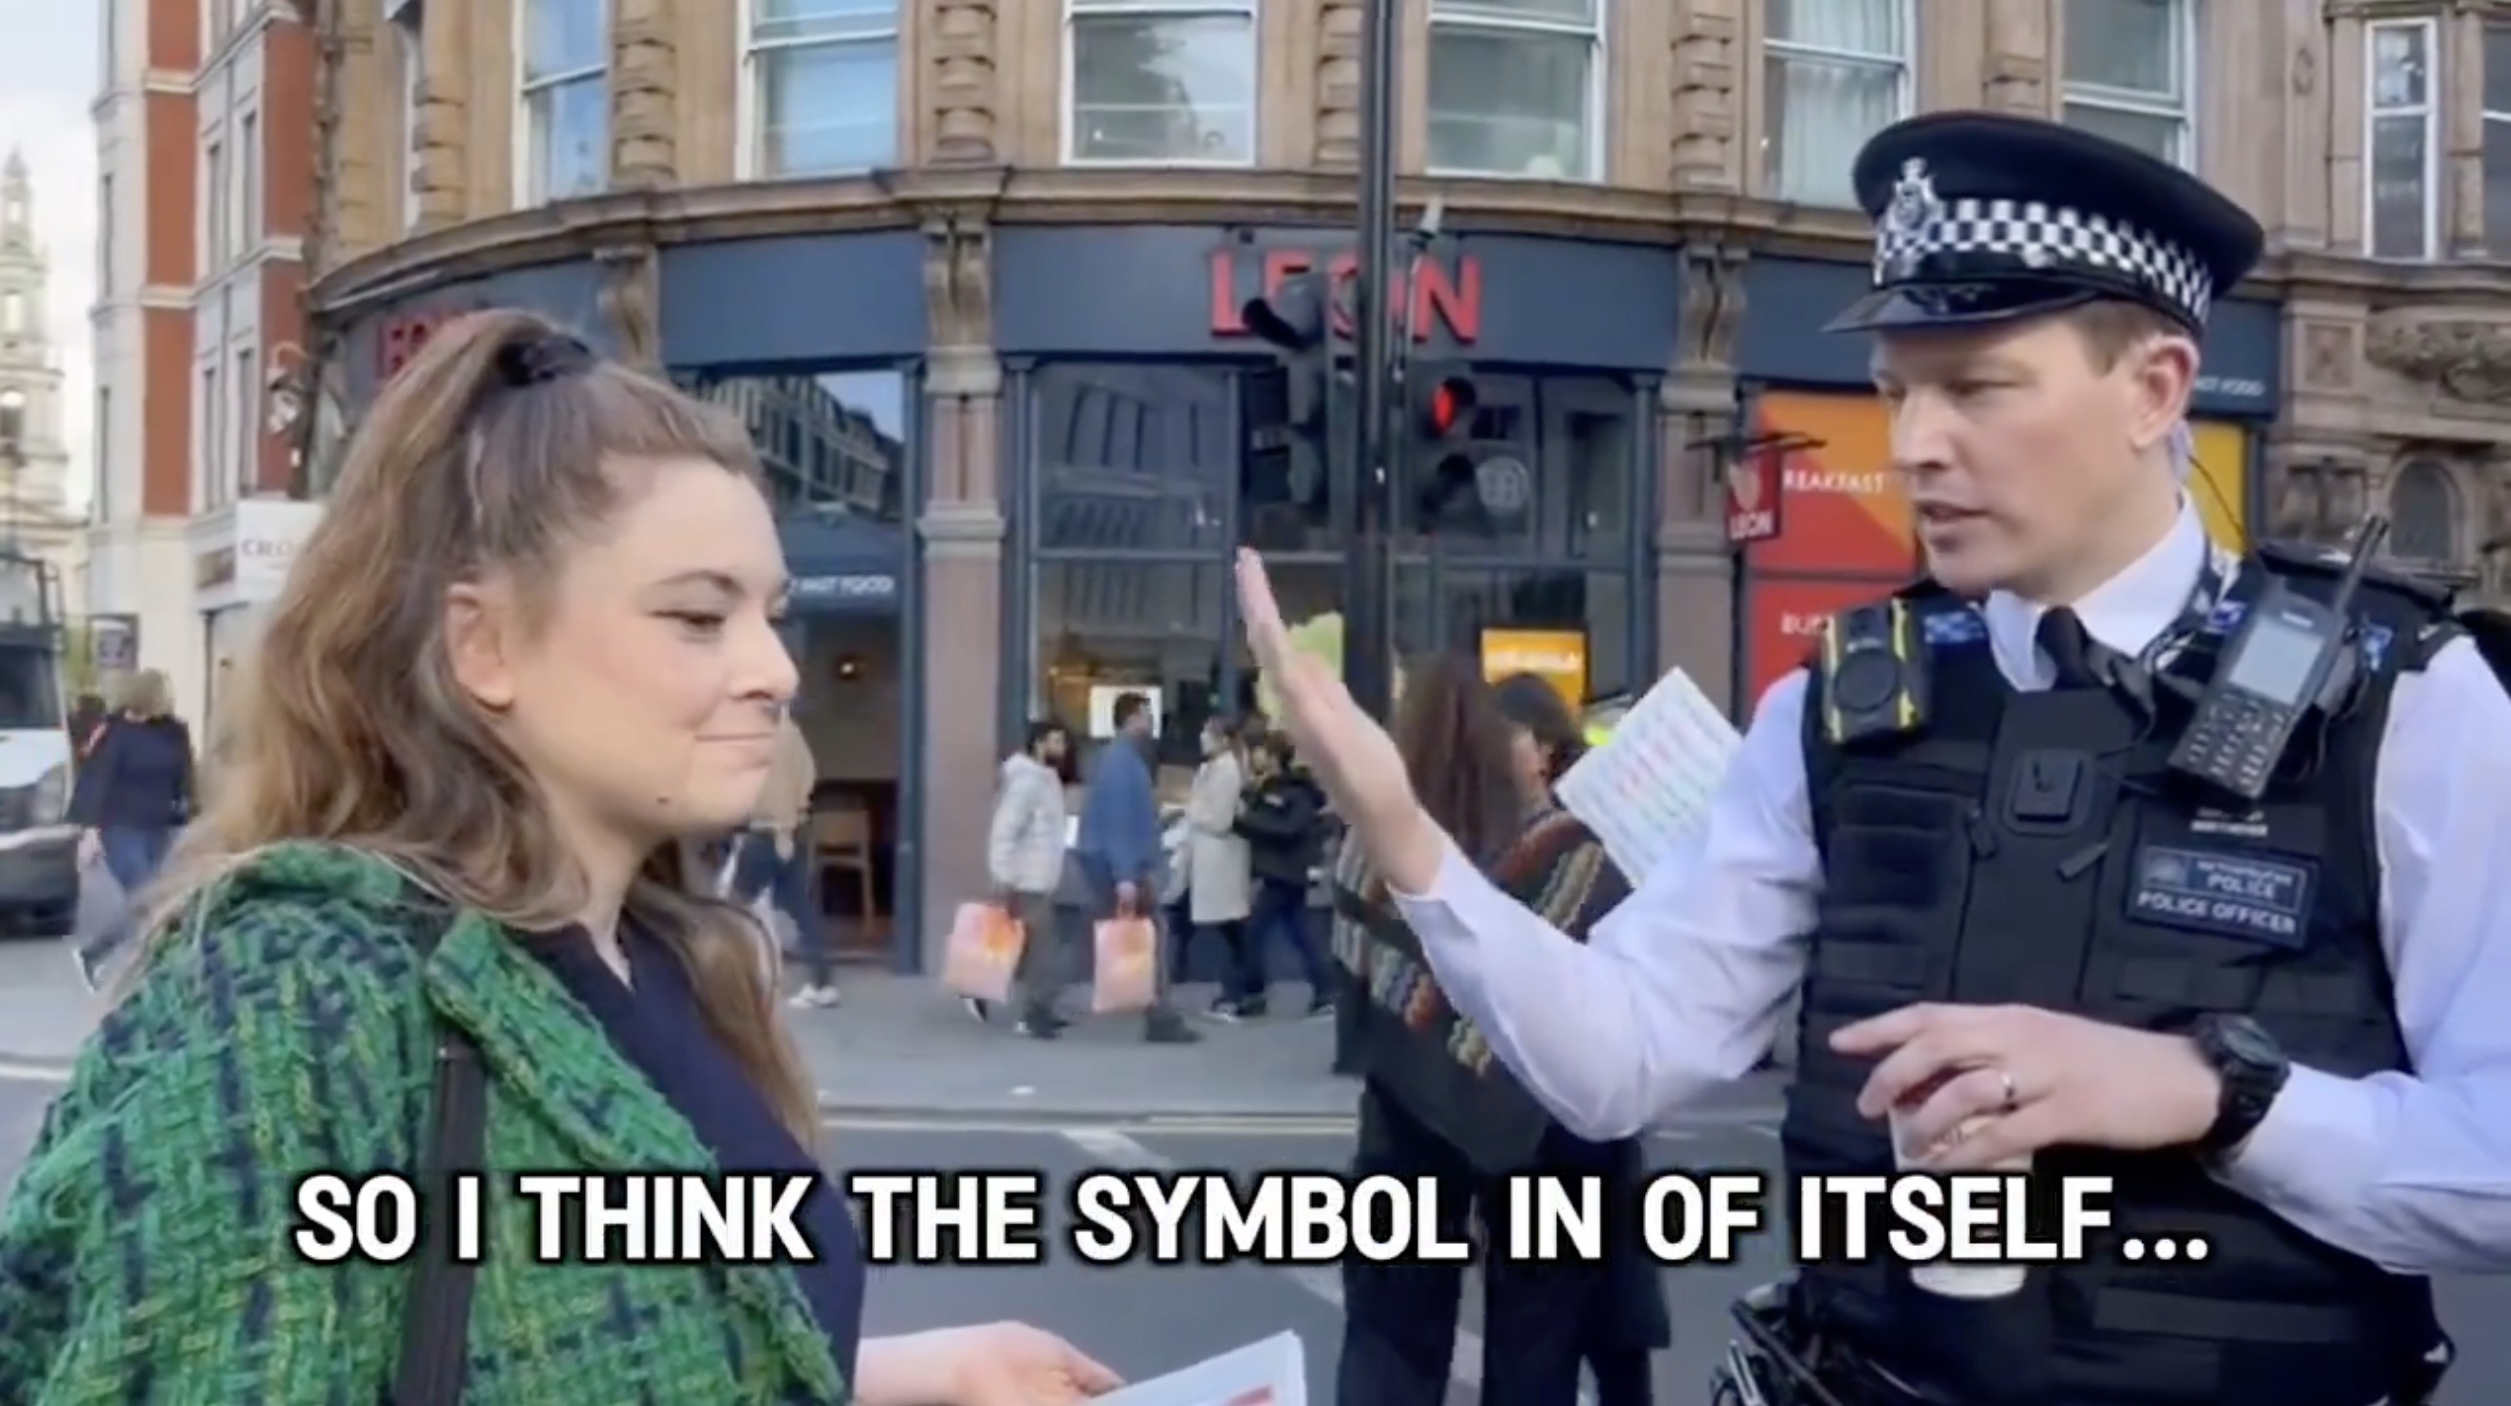 Man sieht eine verzweifelte jüdische Frau, die sich über das Nazi-Symbol auf Plakaten beschwert